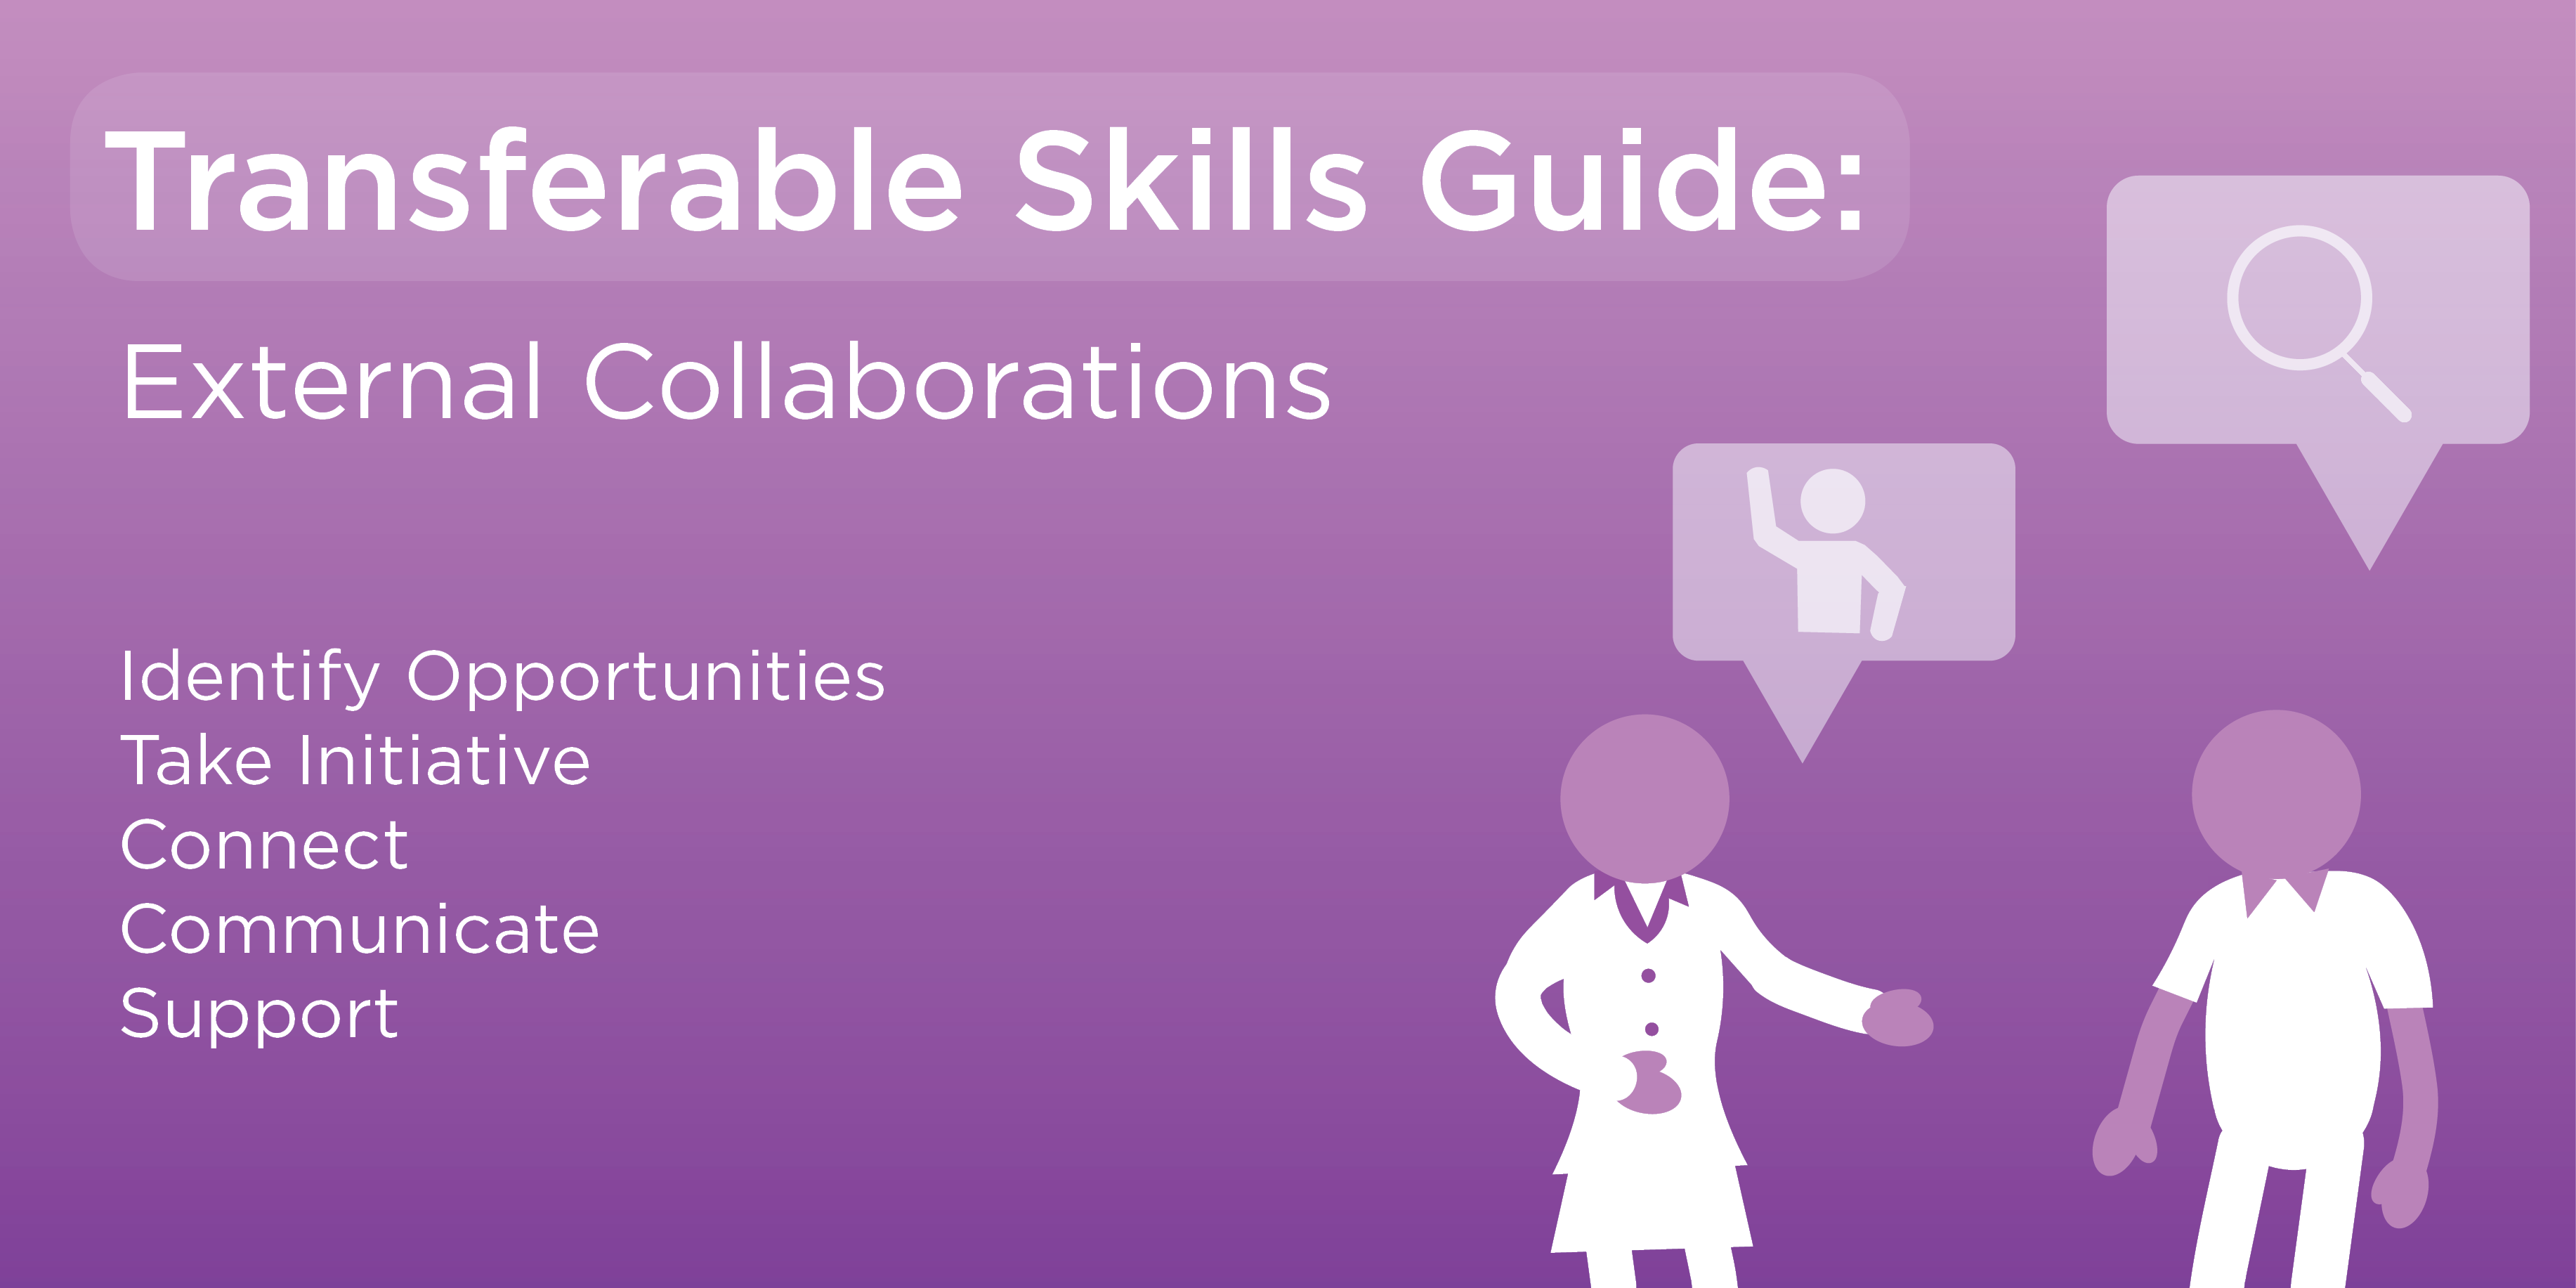 Transferable skills guide